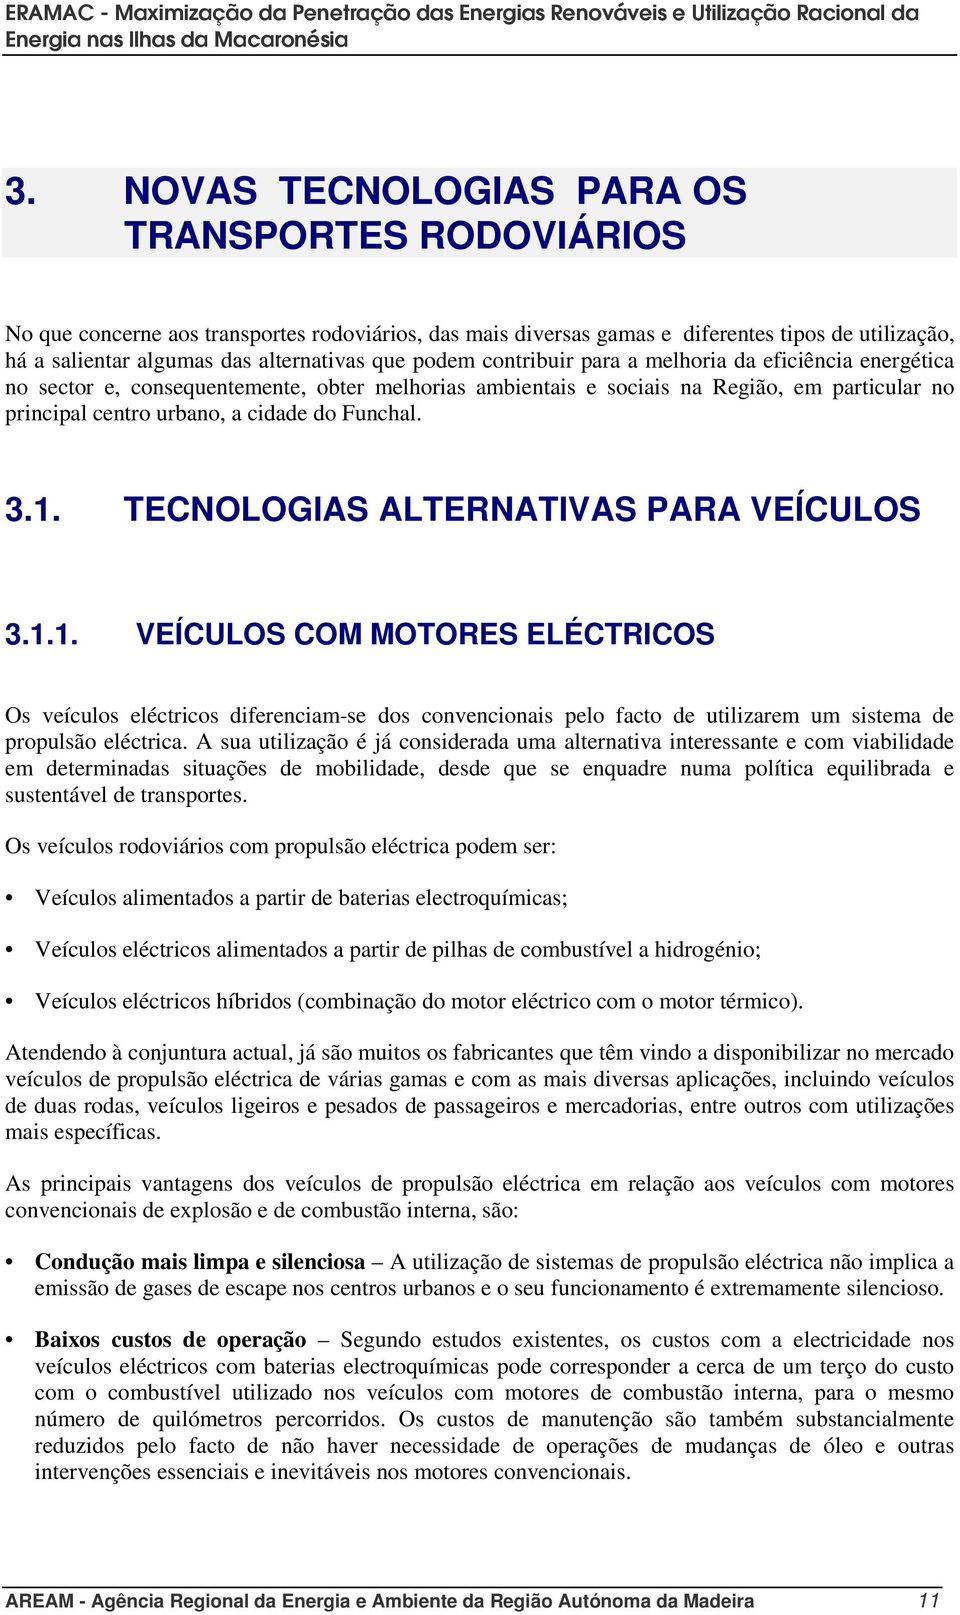 3.1. TECNOLOGIAS ALTERNATIVAS PARA VEÍCULOS 3.1.1. VEÍCULOS COM MOTORES ELÉCTRICOS Os veículos eléctricos diferenciam-se dos convencionais pelo facto de utilizarem um sistema de propulsão eléctrica.